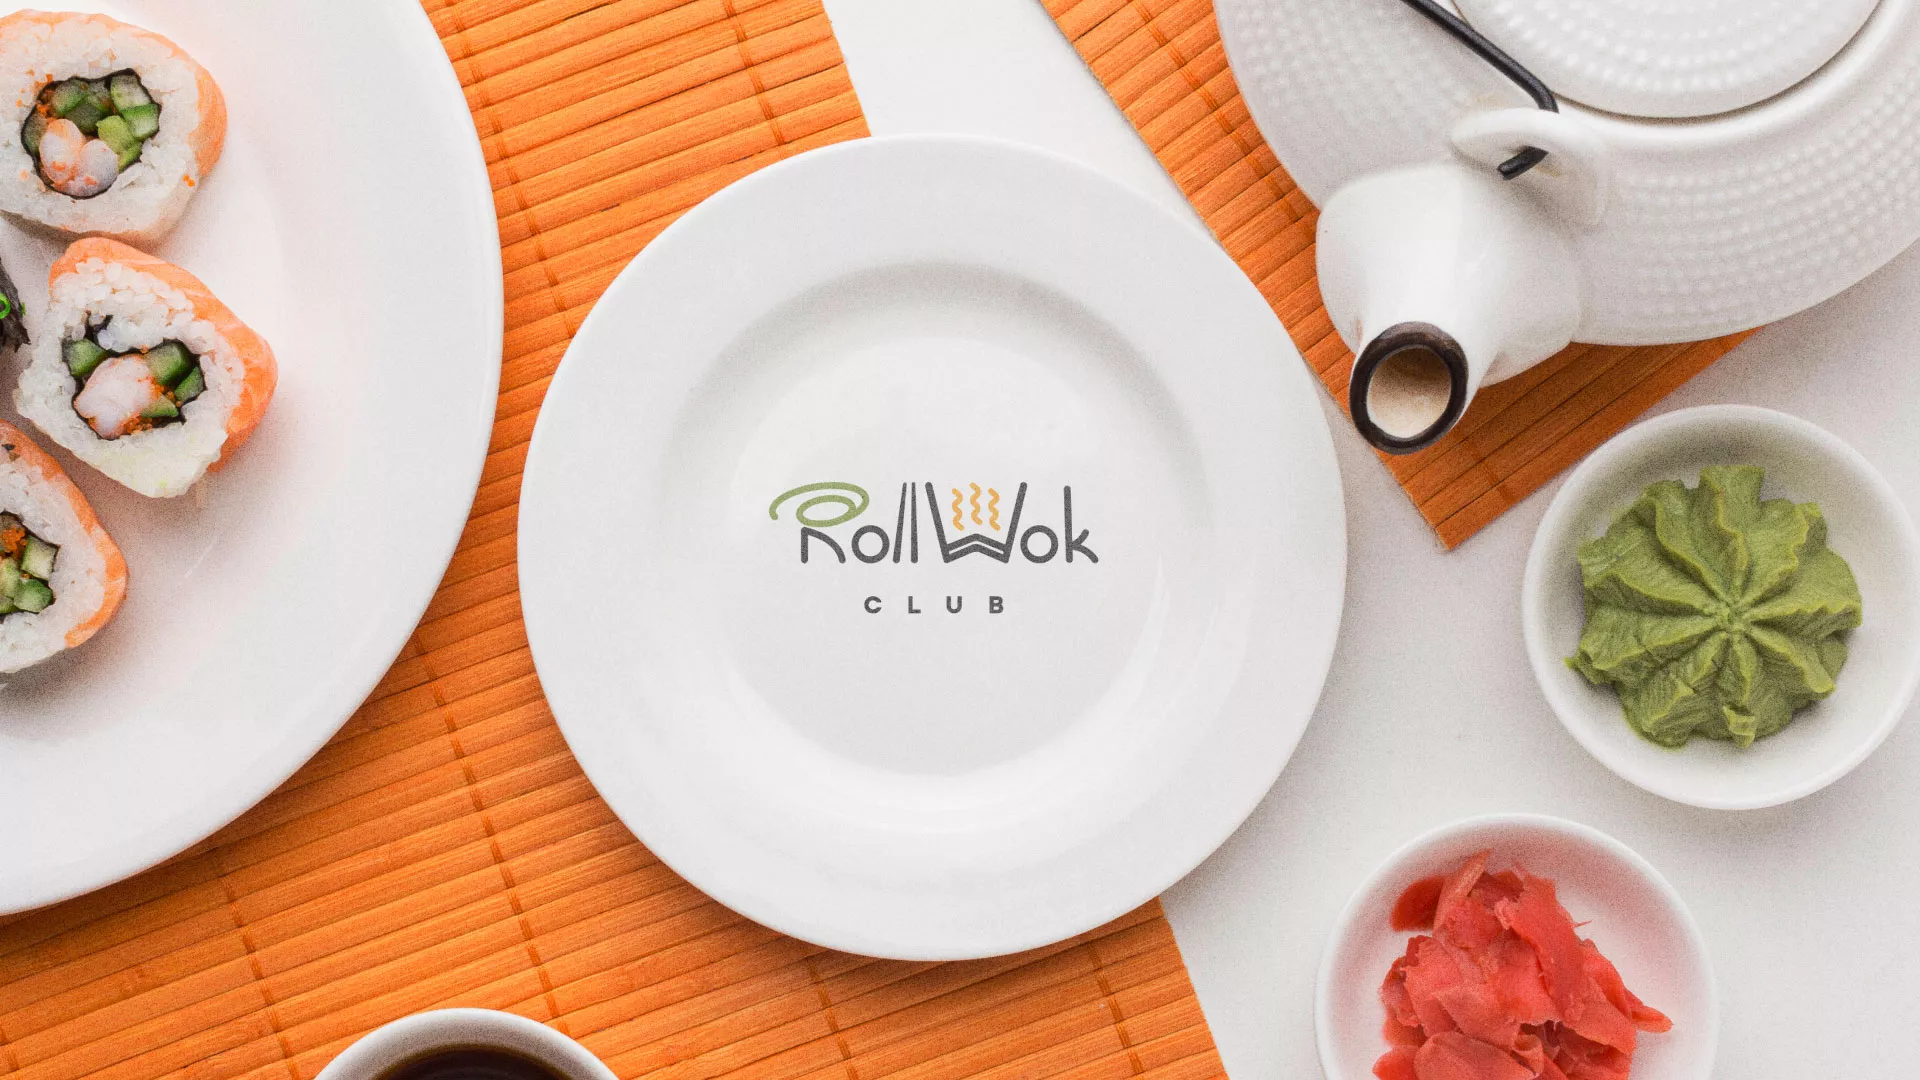 Разработка логотипа и фирменного стиля суши-бара «Roll Wok Club» в Новочебоксарске